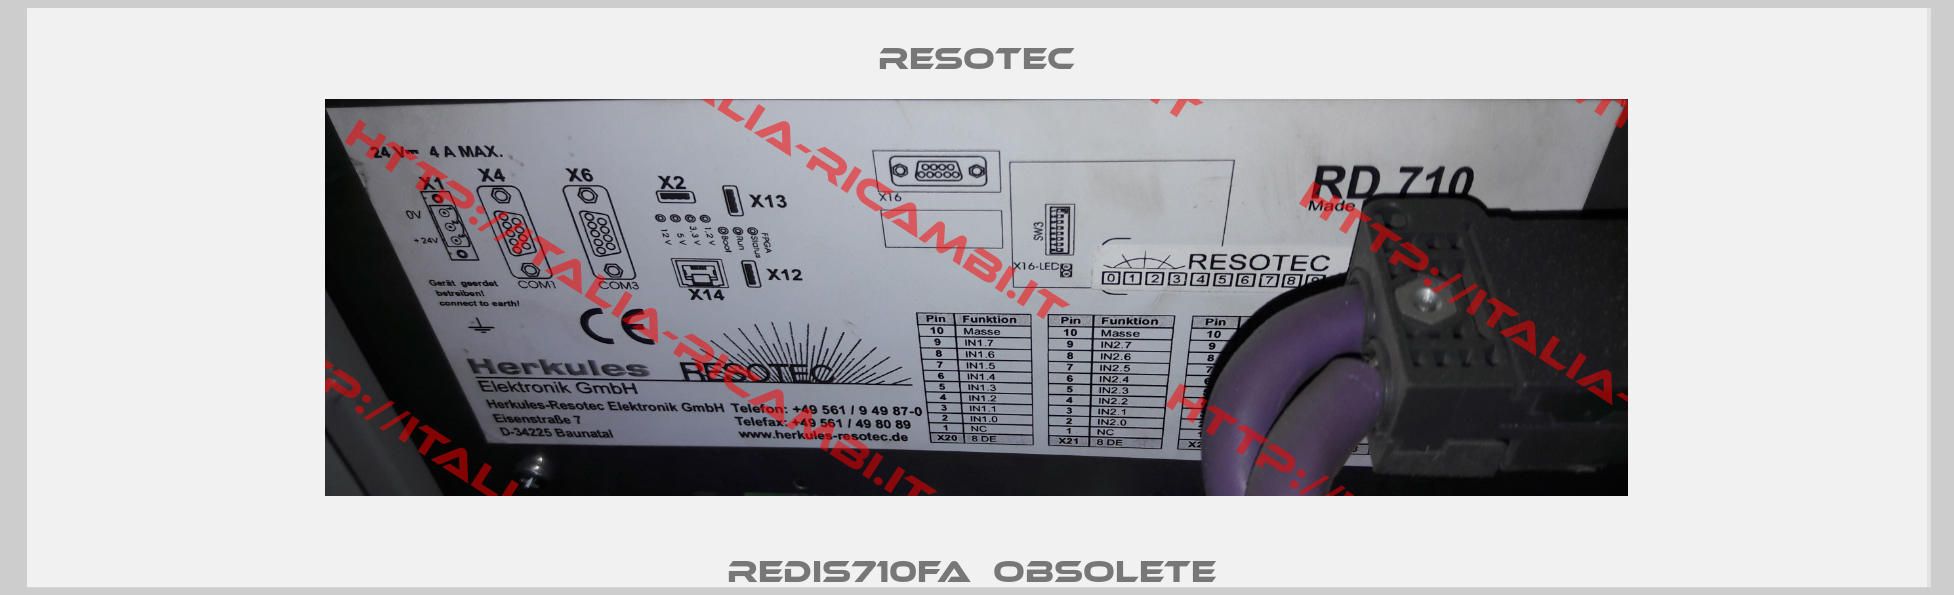 REDIS710FA  Obsolete -1